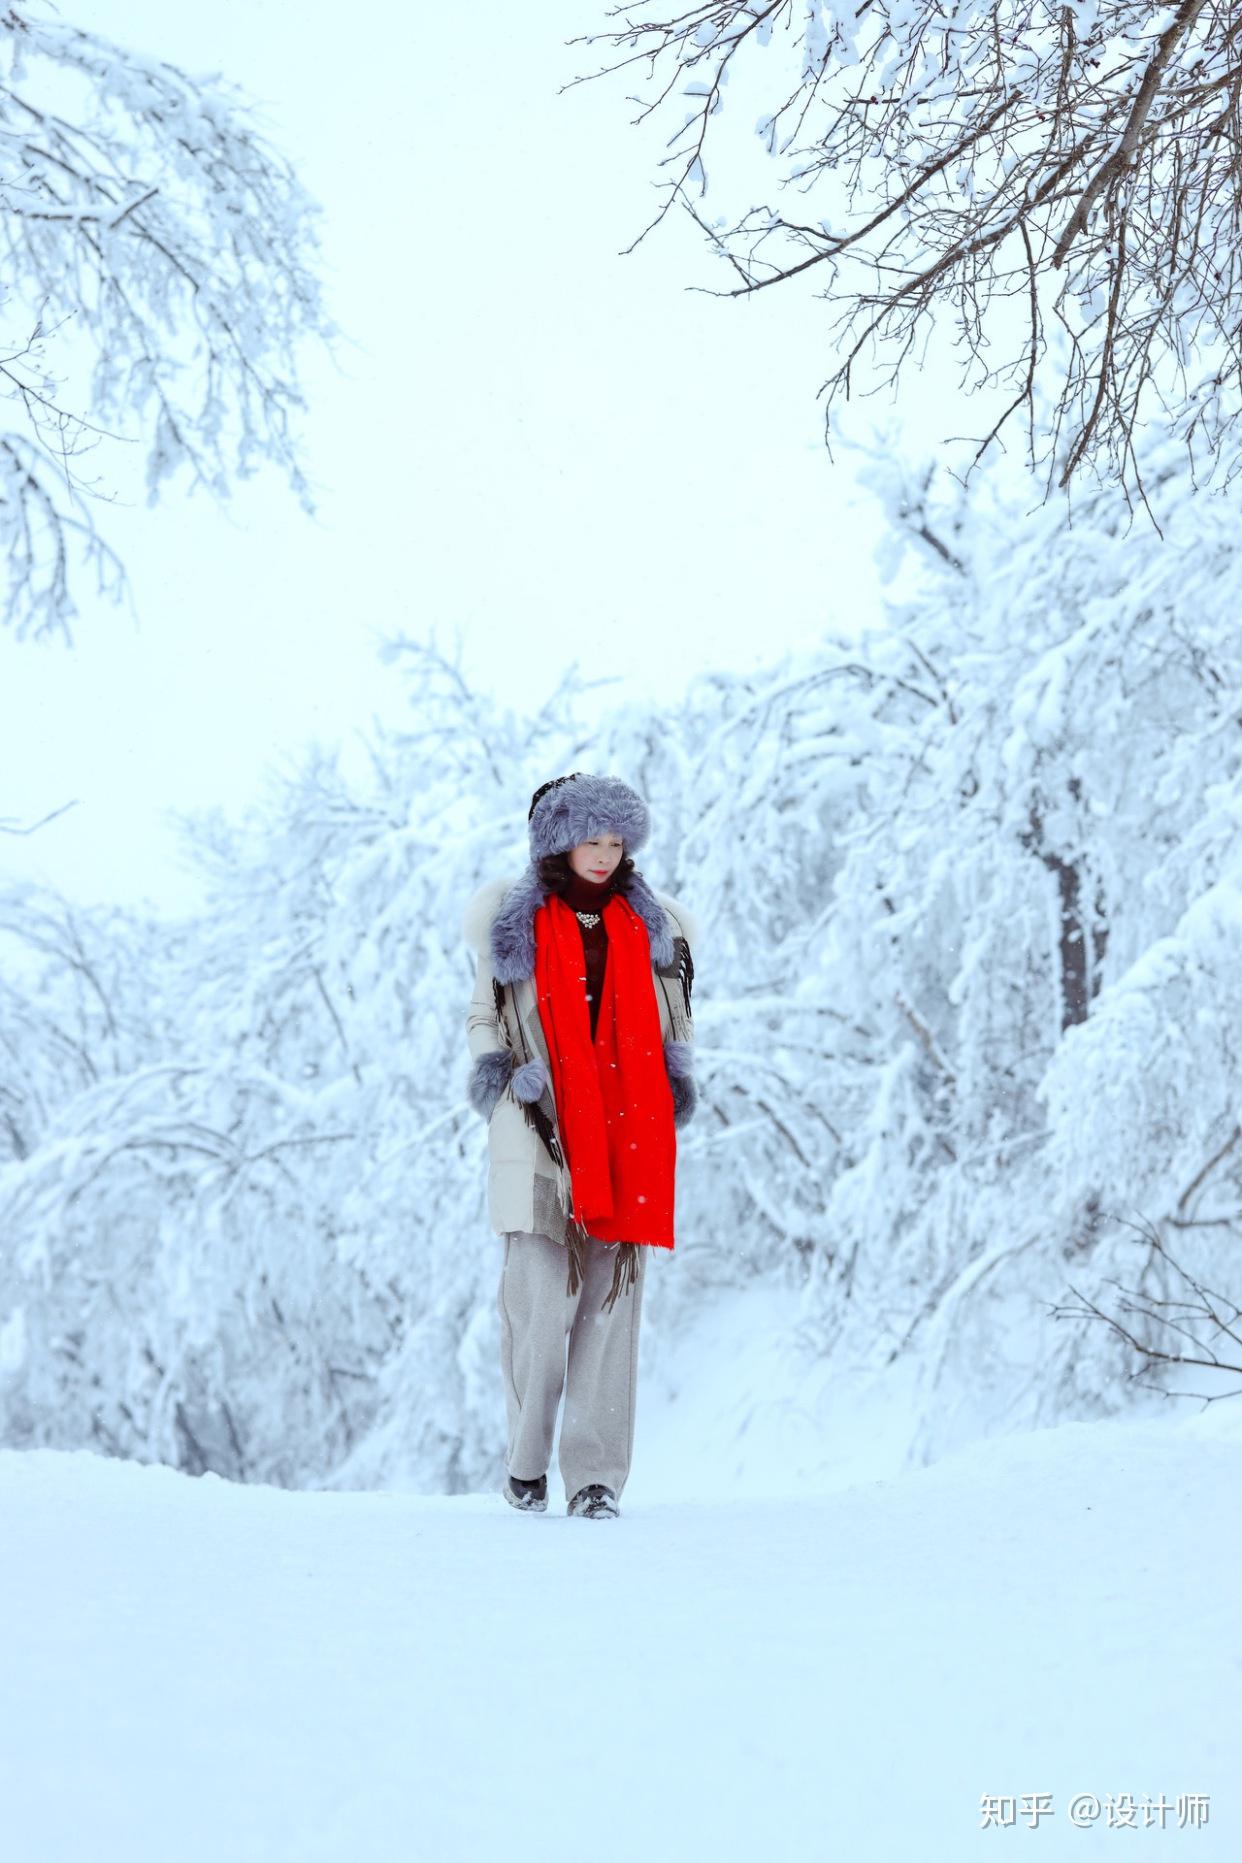 50多岁的女性如何拍雪景人像?8个要点不可不知,简约大气有意境